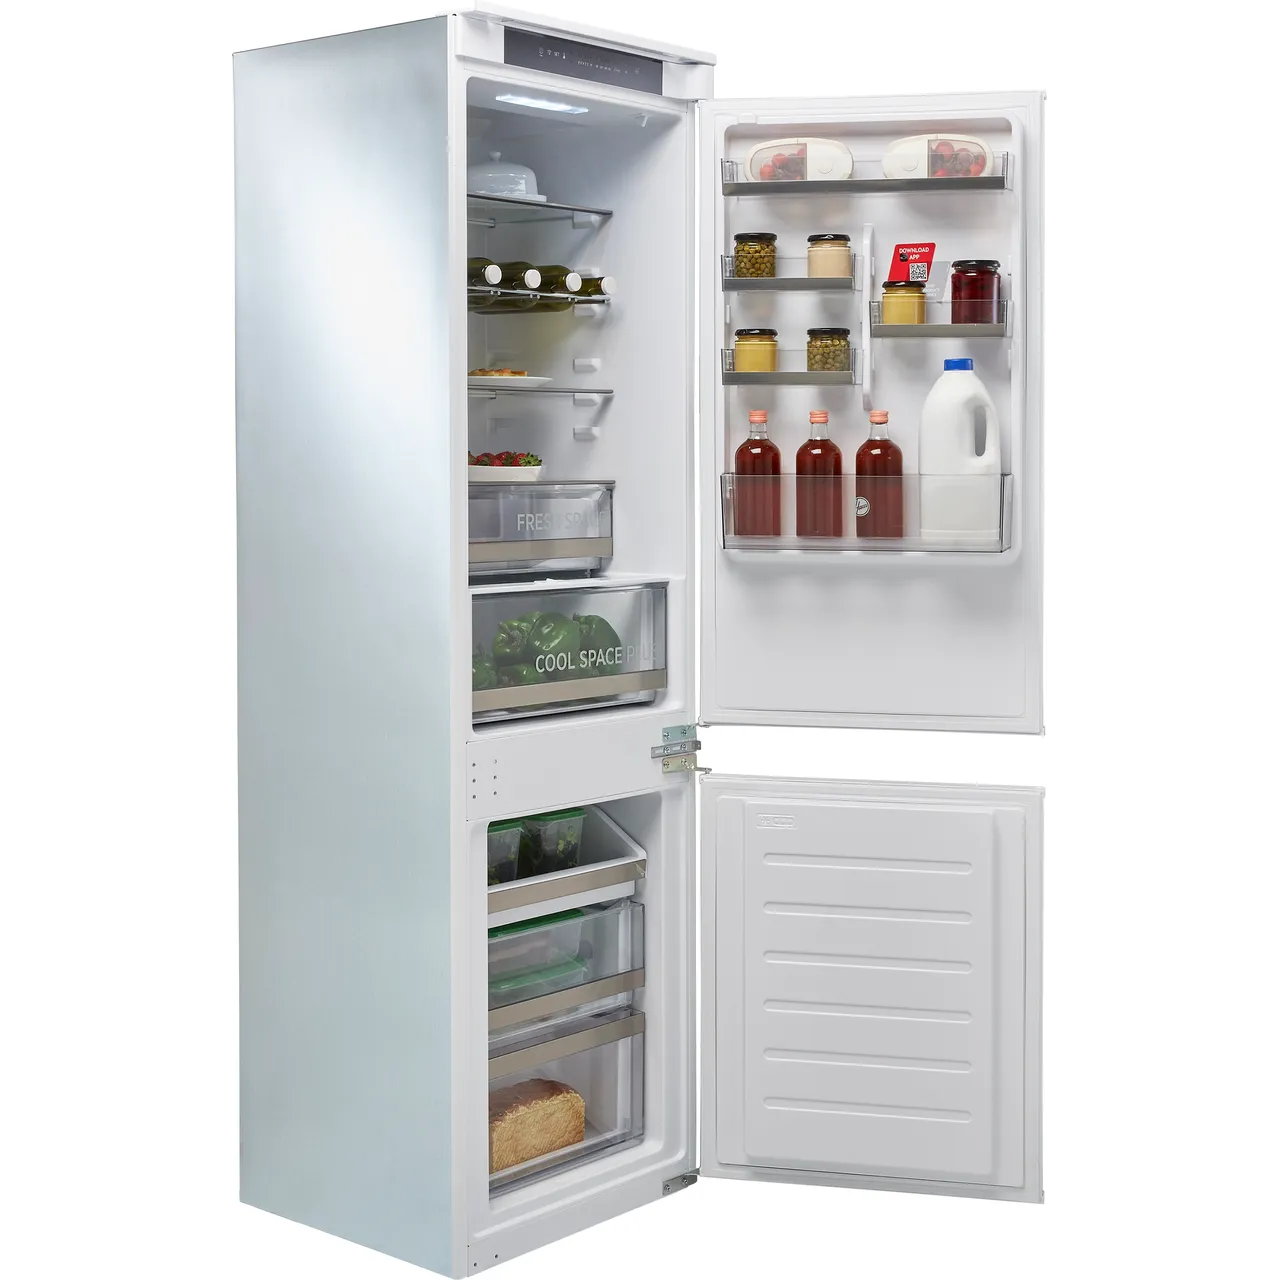 Hoover HOBT5518EWK 70:30 Built-in Frost free Fridge freezer, - White 0142